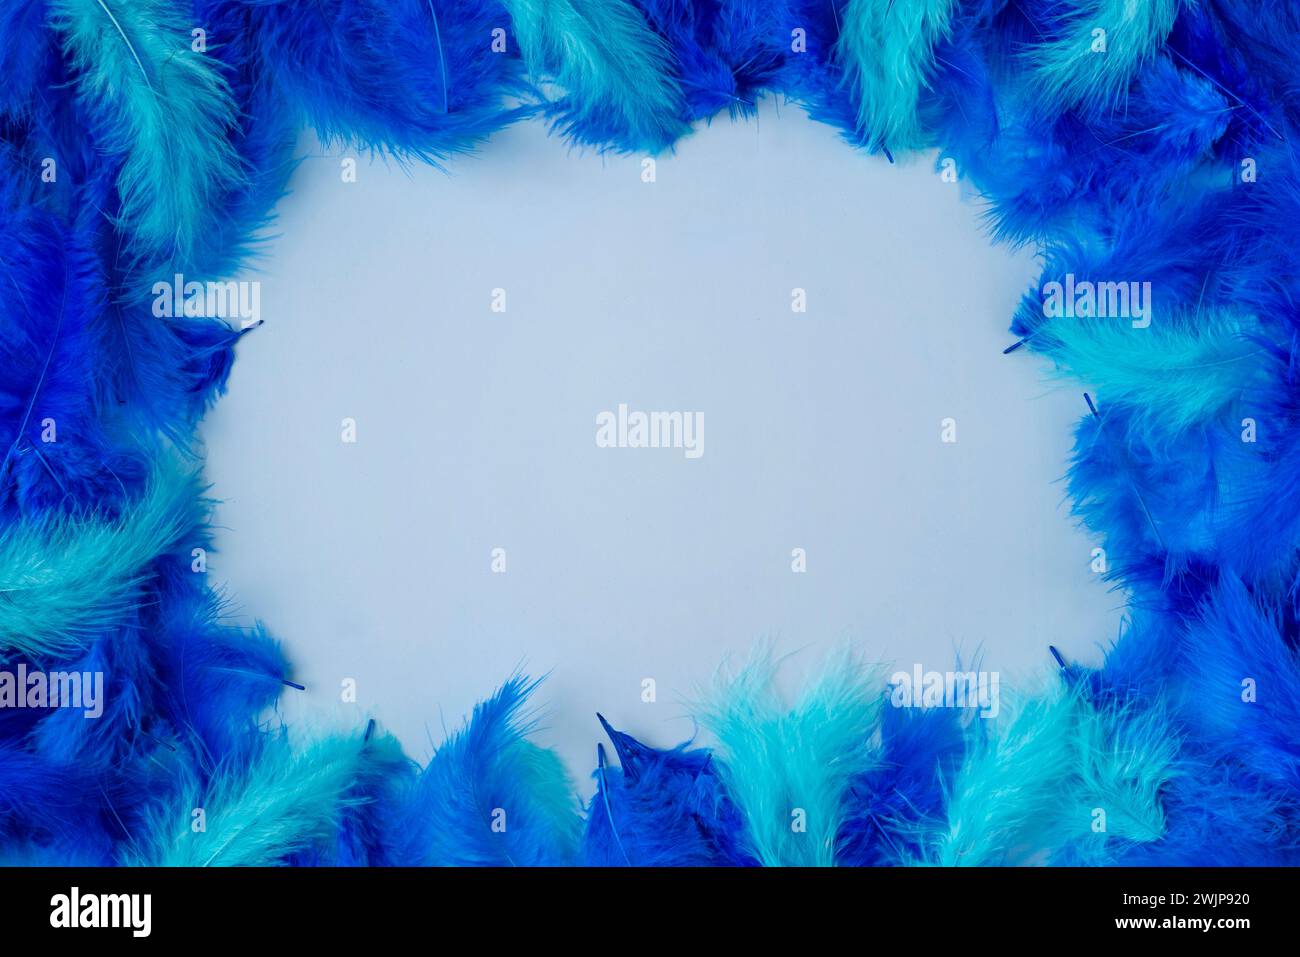 Rahmen aus blauen und türkisfarbenen Federn auf hellblauem Hintergrund Stockfoto